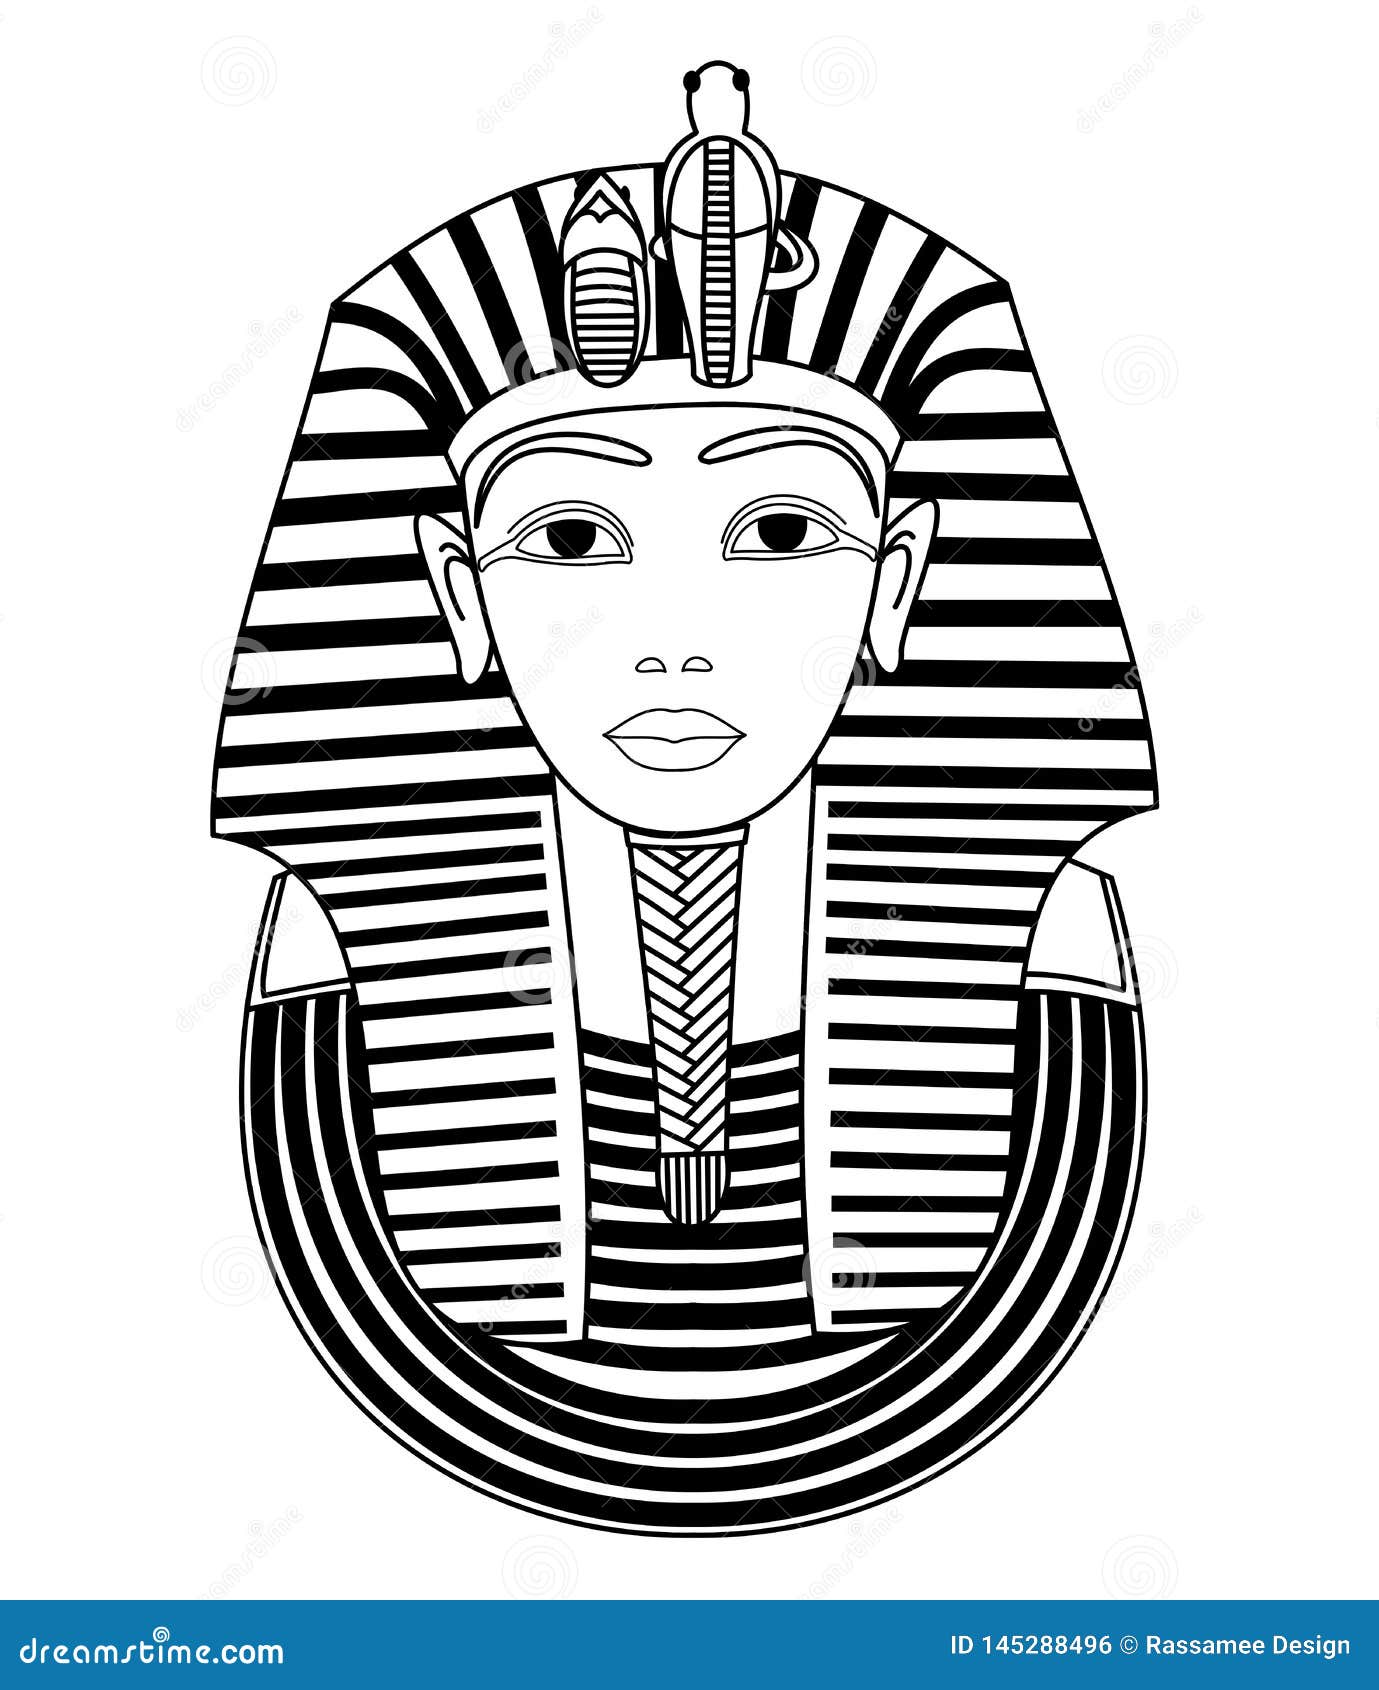 Эскиз маска фараона. Маска фараона Тутанхамона изо. Маска Тутанхамона рисунок 5. Фараон Египта Тутанхамон эскиз. Маска фараона Тутанхамона изо 5.